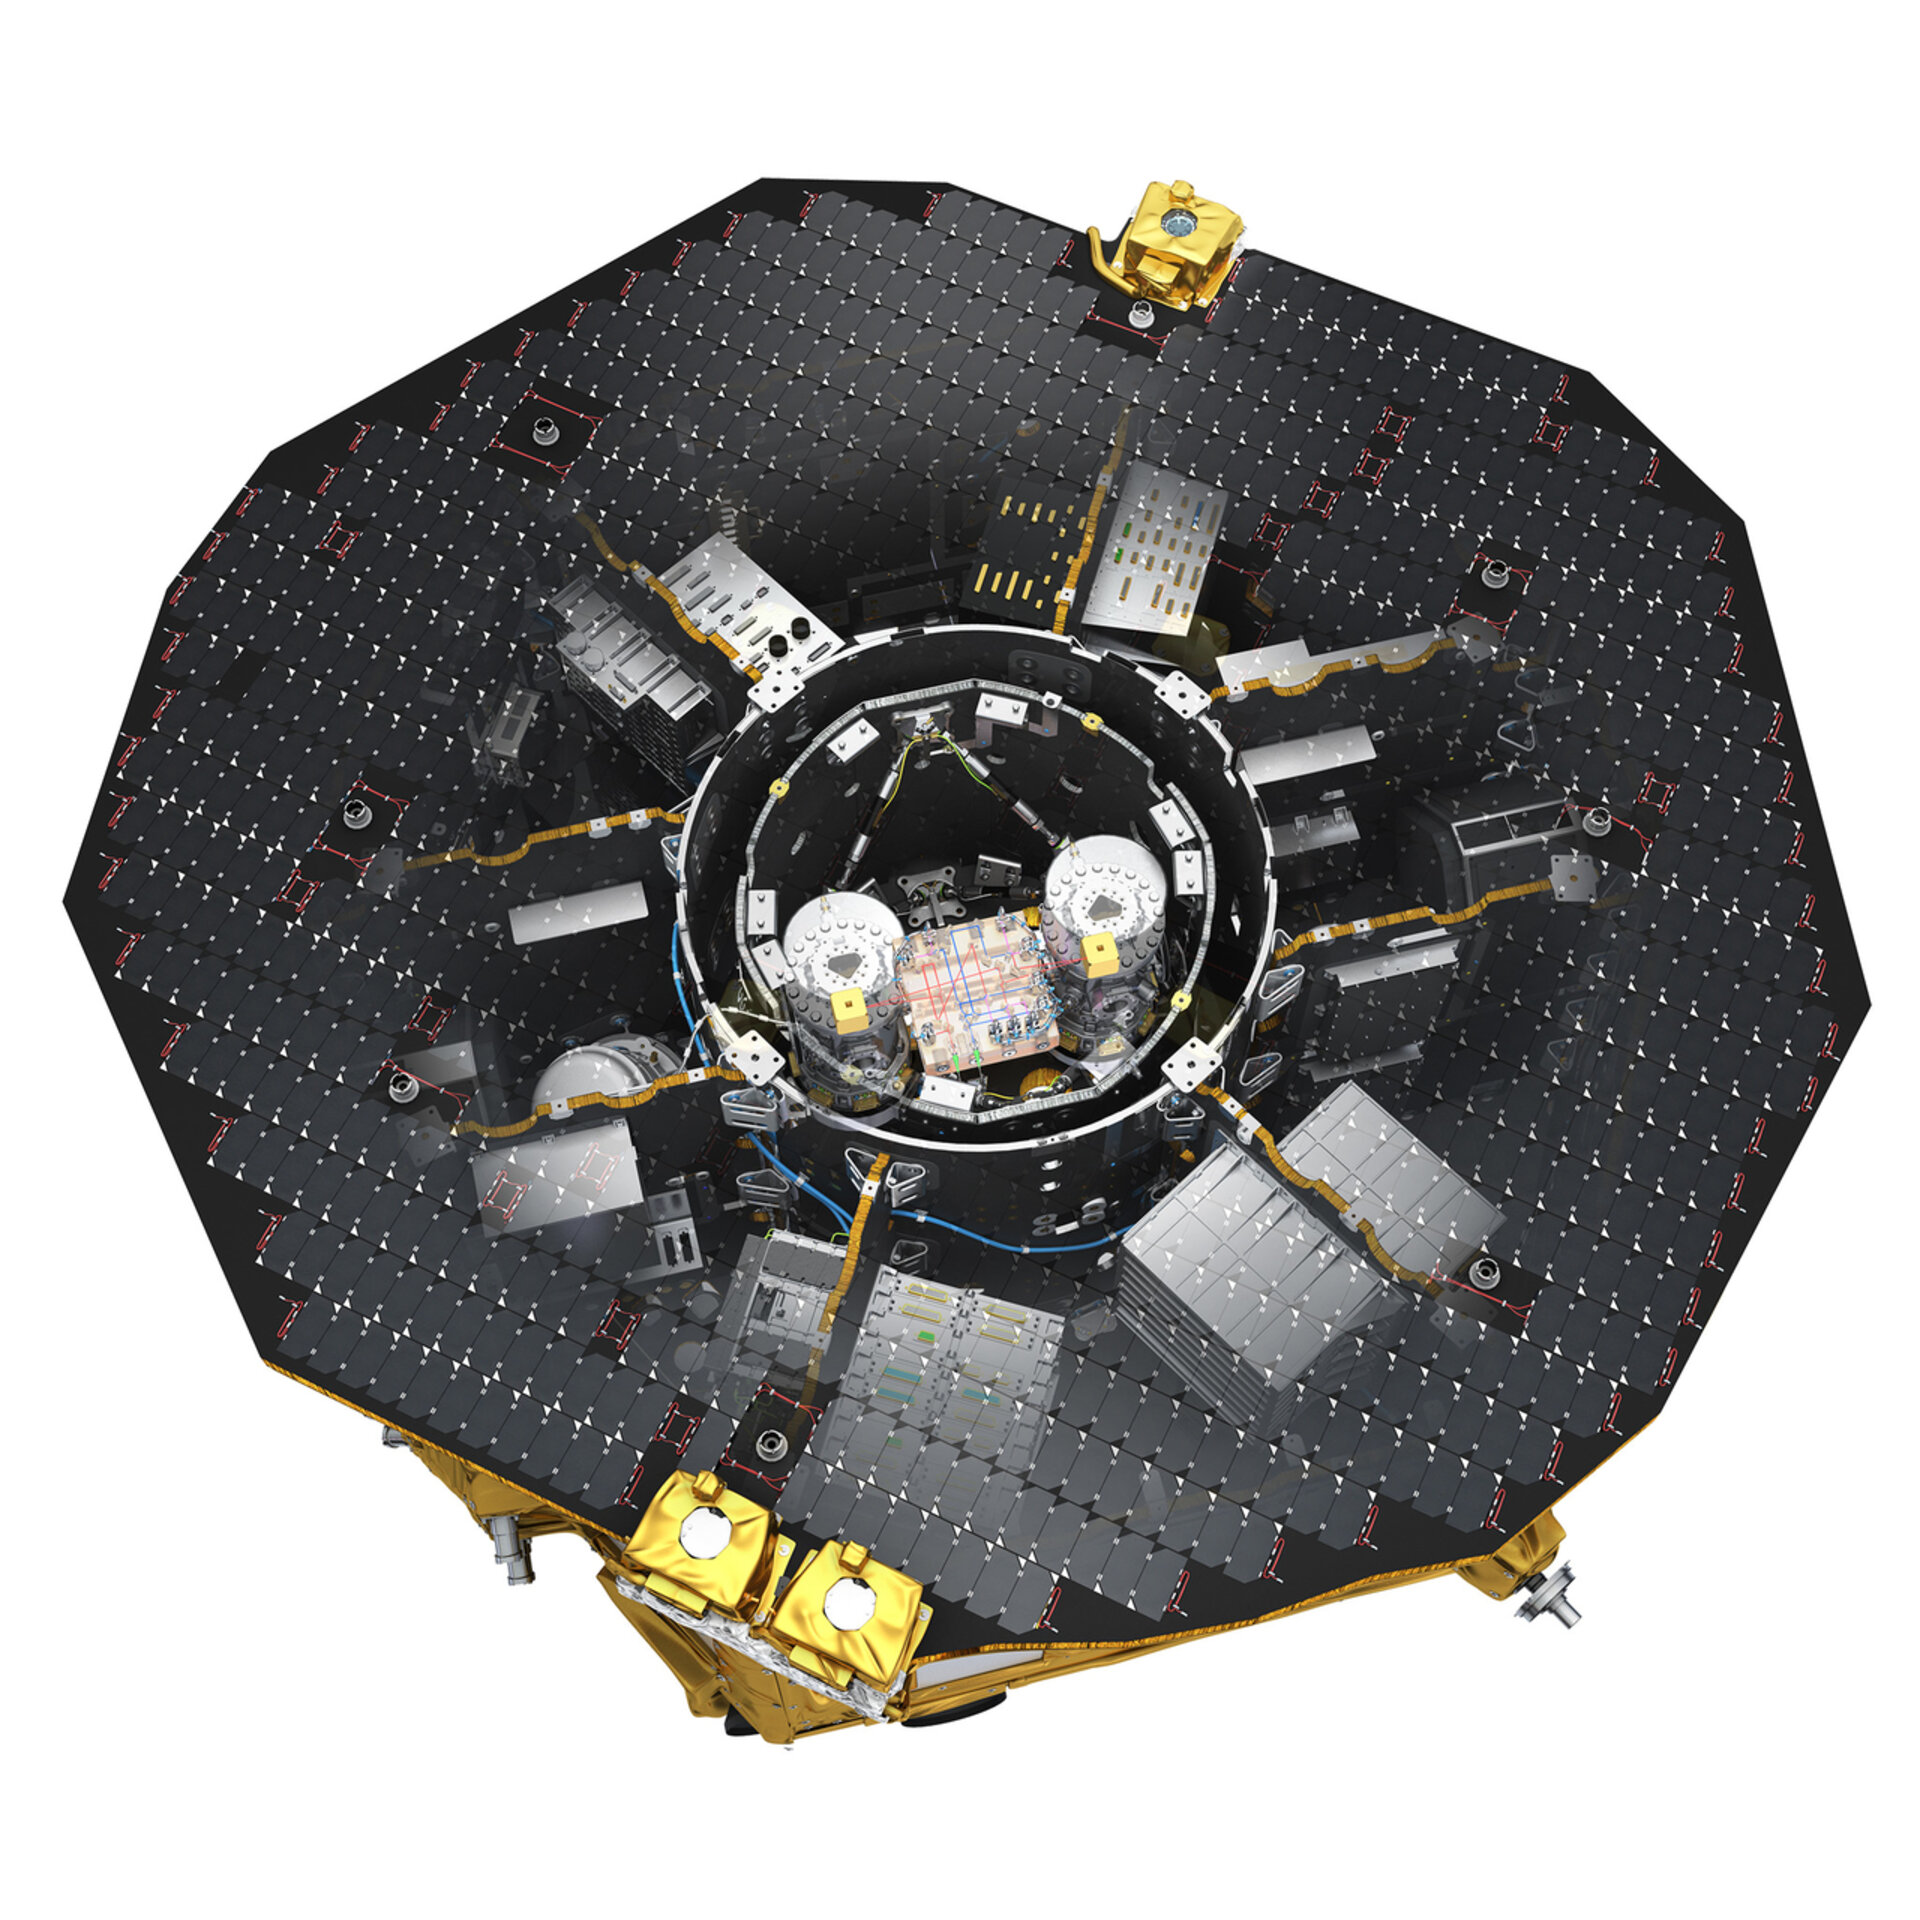 Test masses inside LISA Pathfinder payload